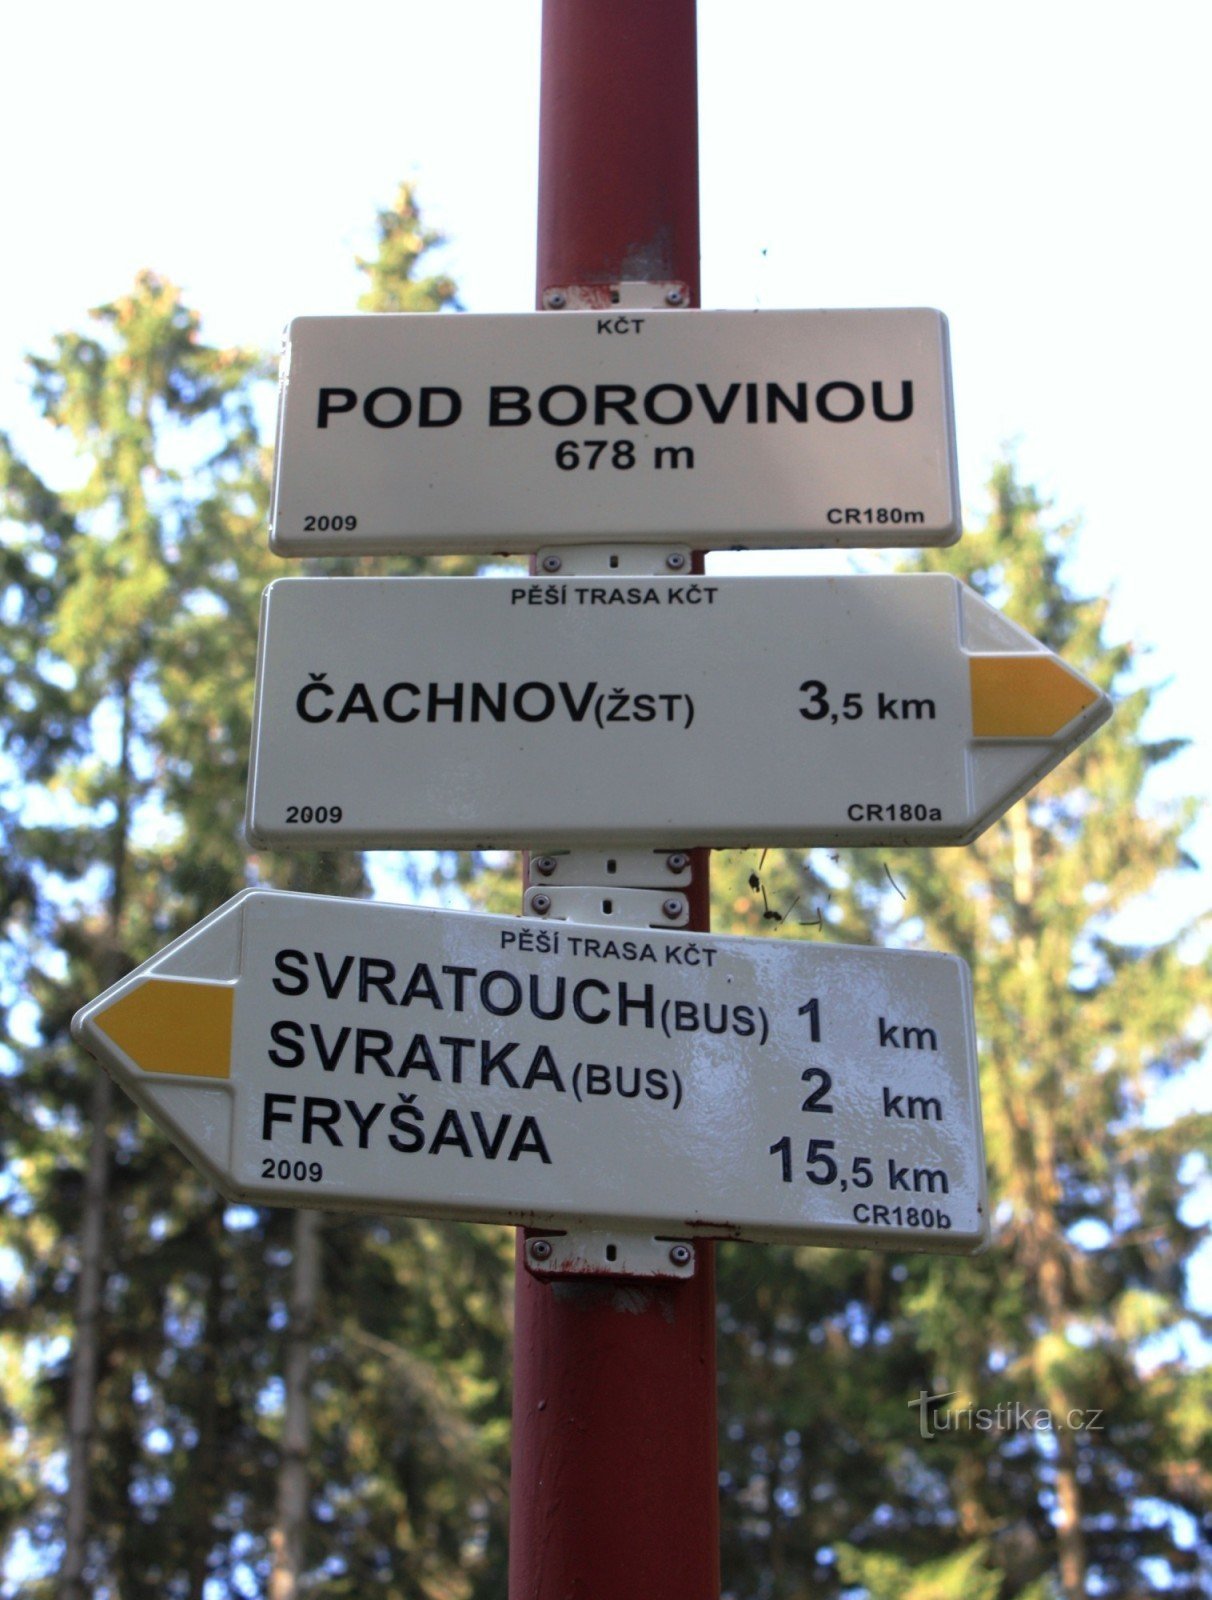 Encruzilhada turística Pod Borovinou